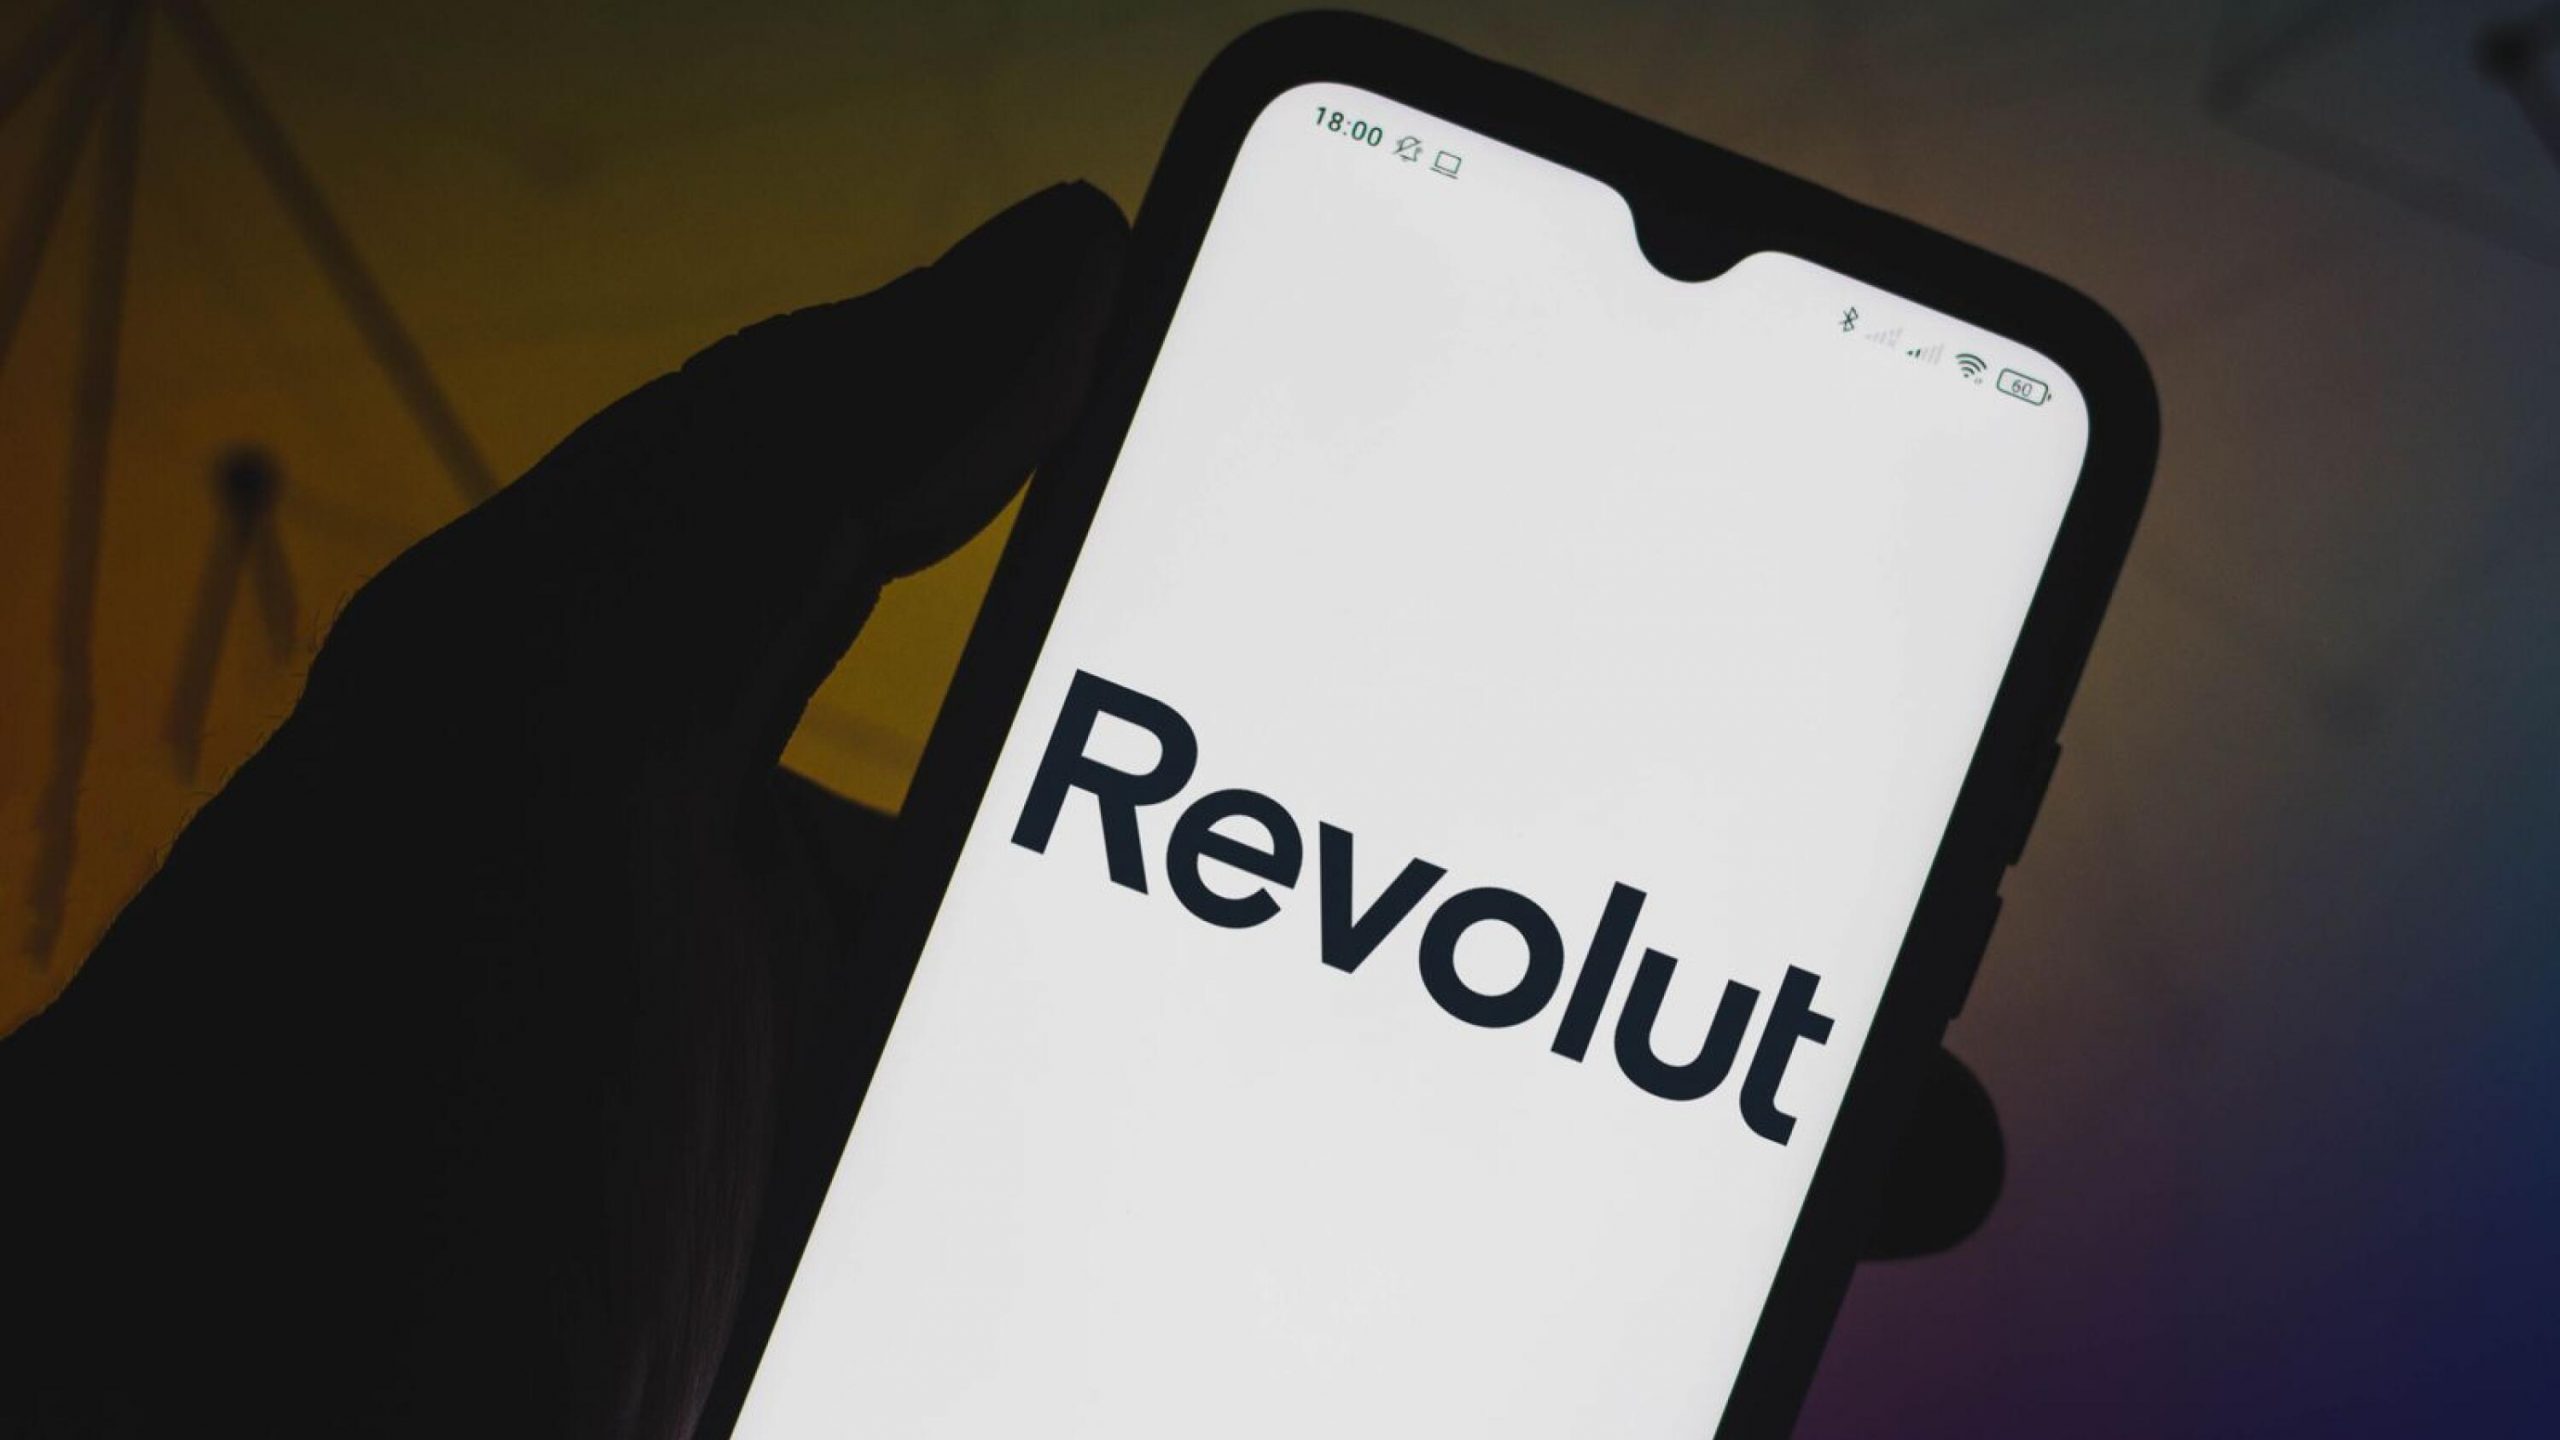 لم تتقدم شركة Revolut بعد بطلب للحصول على ترخيص مصرفي أمريكي بشكل رسمي